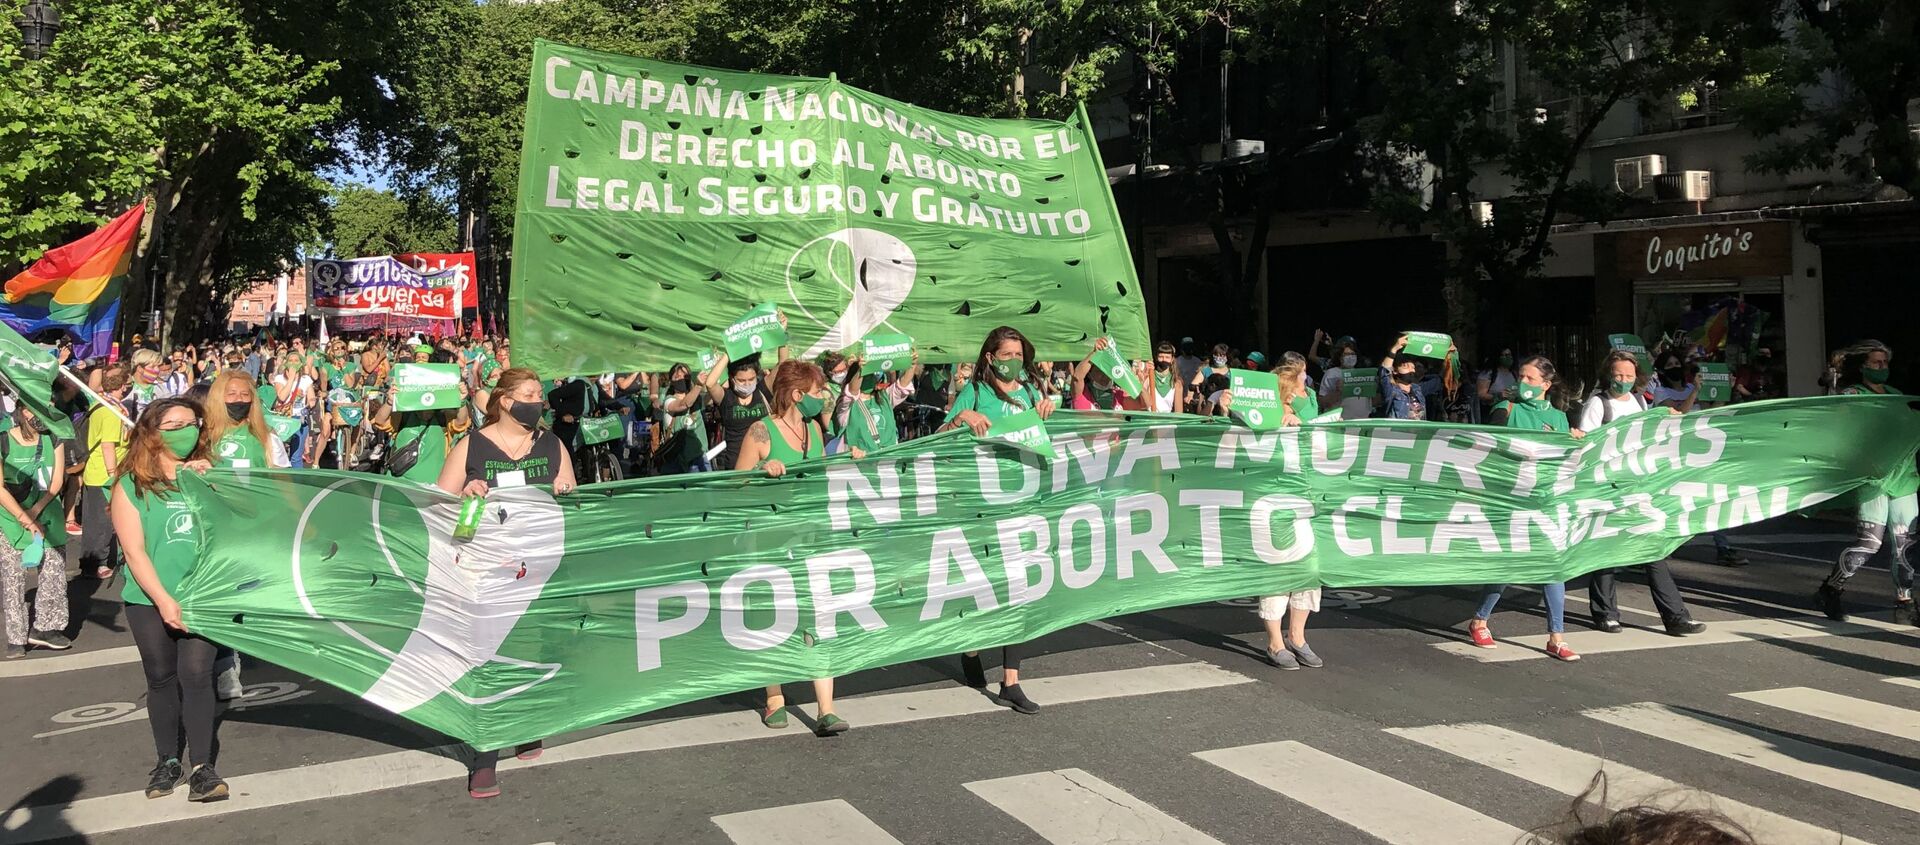 Marcha en Argentina reclamando la legalización del aborto - Sputnik Mundo, 1920, 28.12.2020